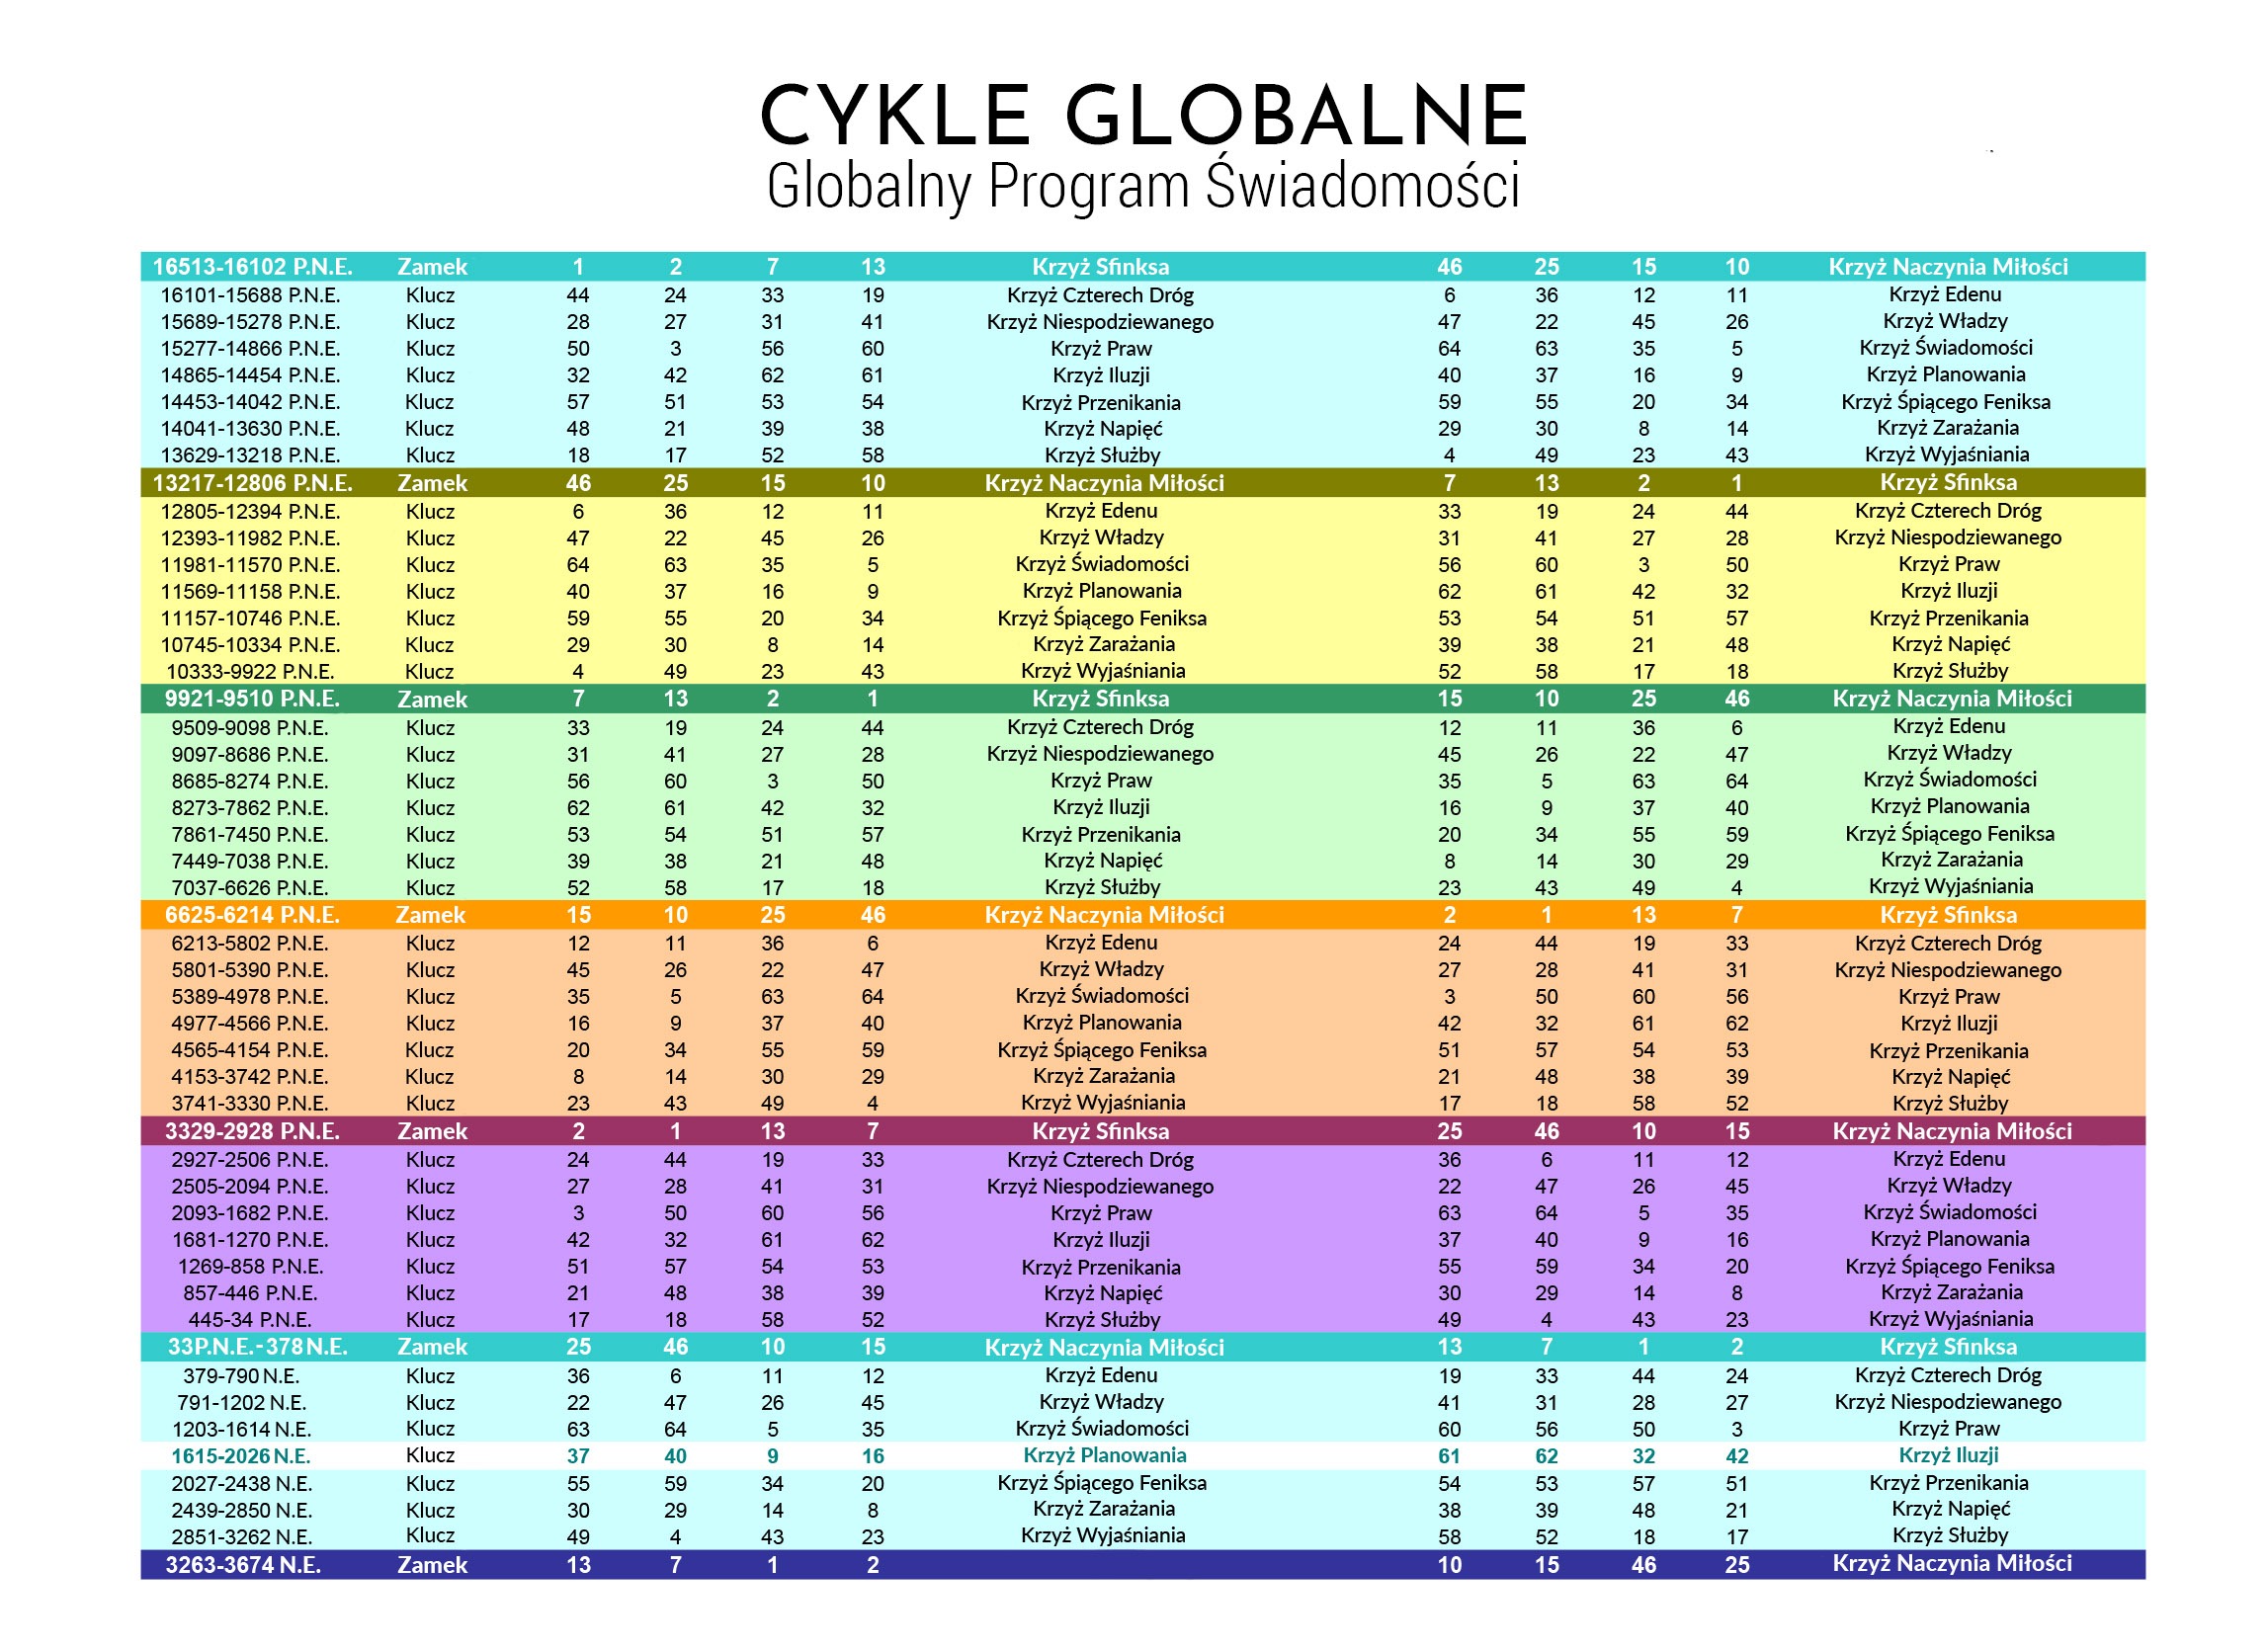 Globalny Program Świadomości - cykle globalne i energie od roku 16513 p.n.e. do 3674 n.e